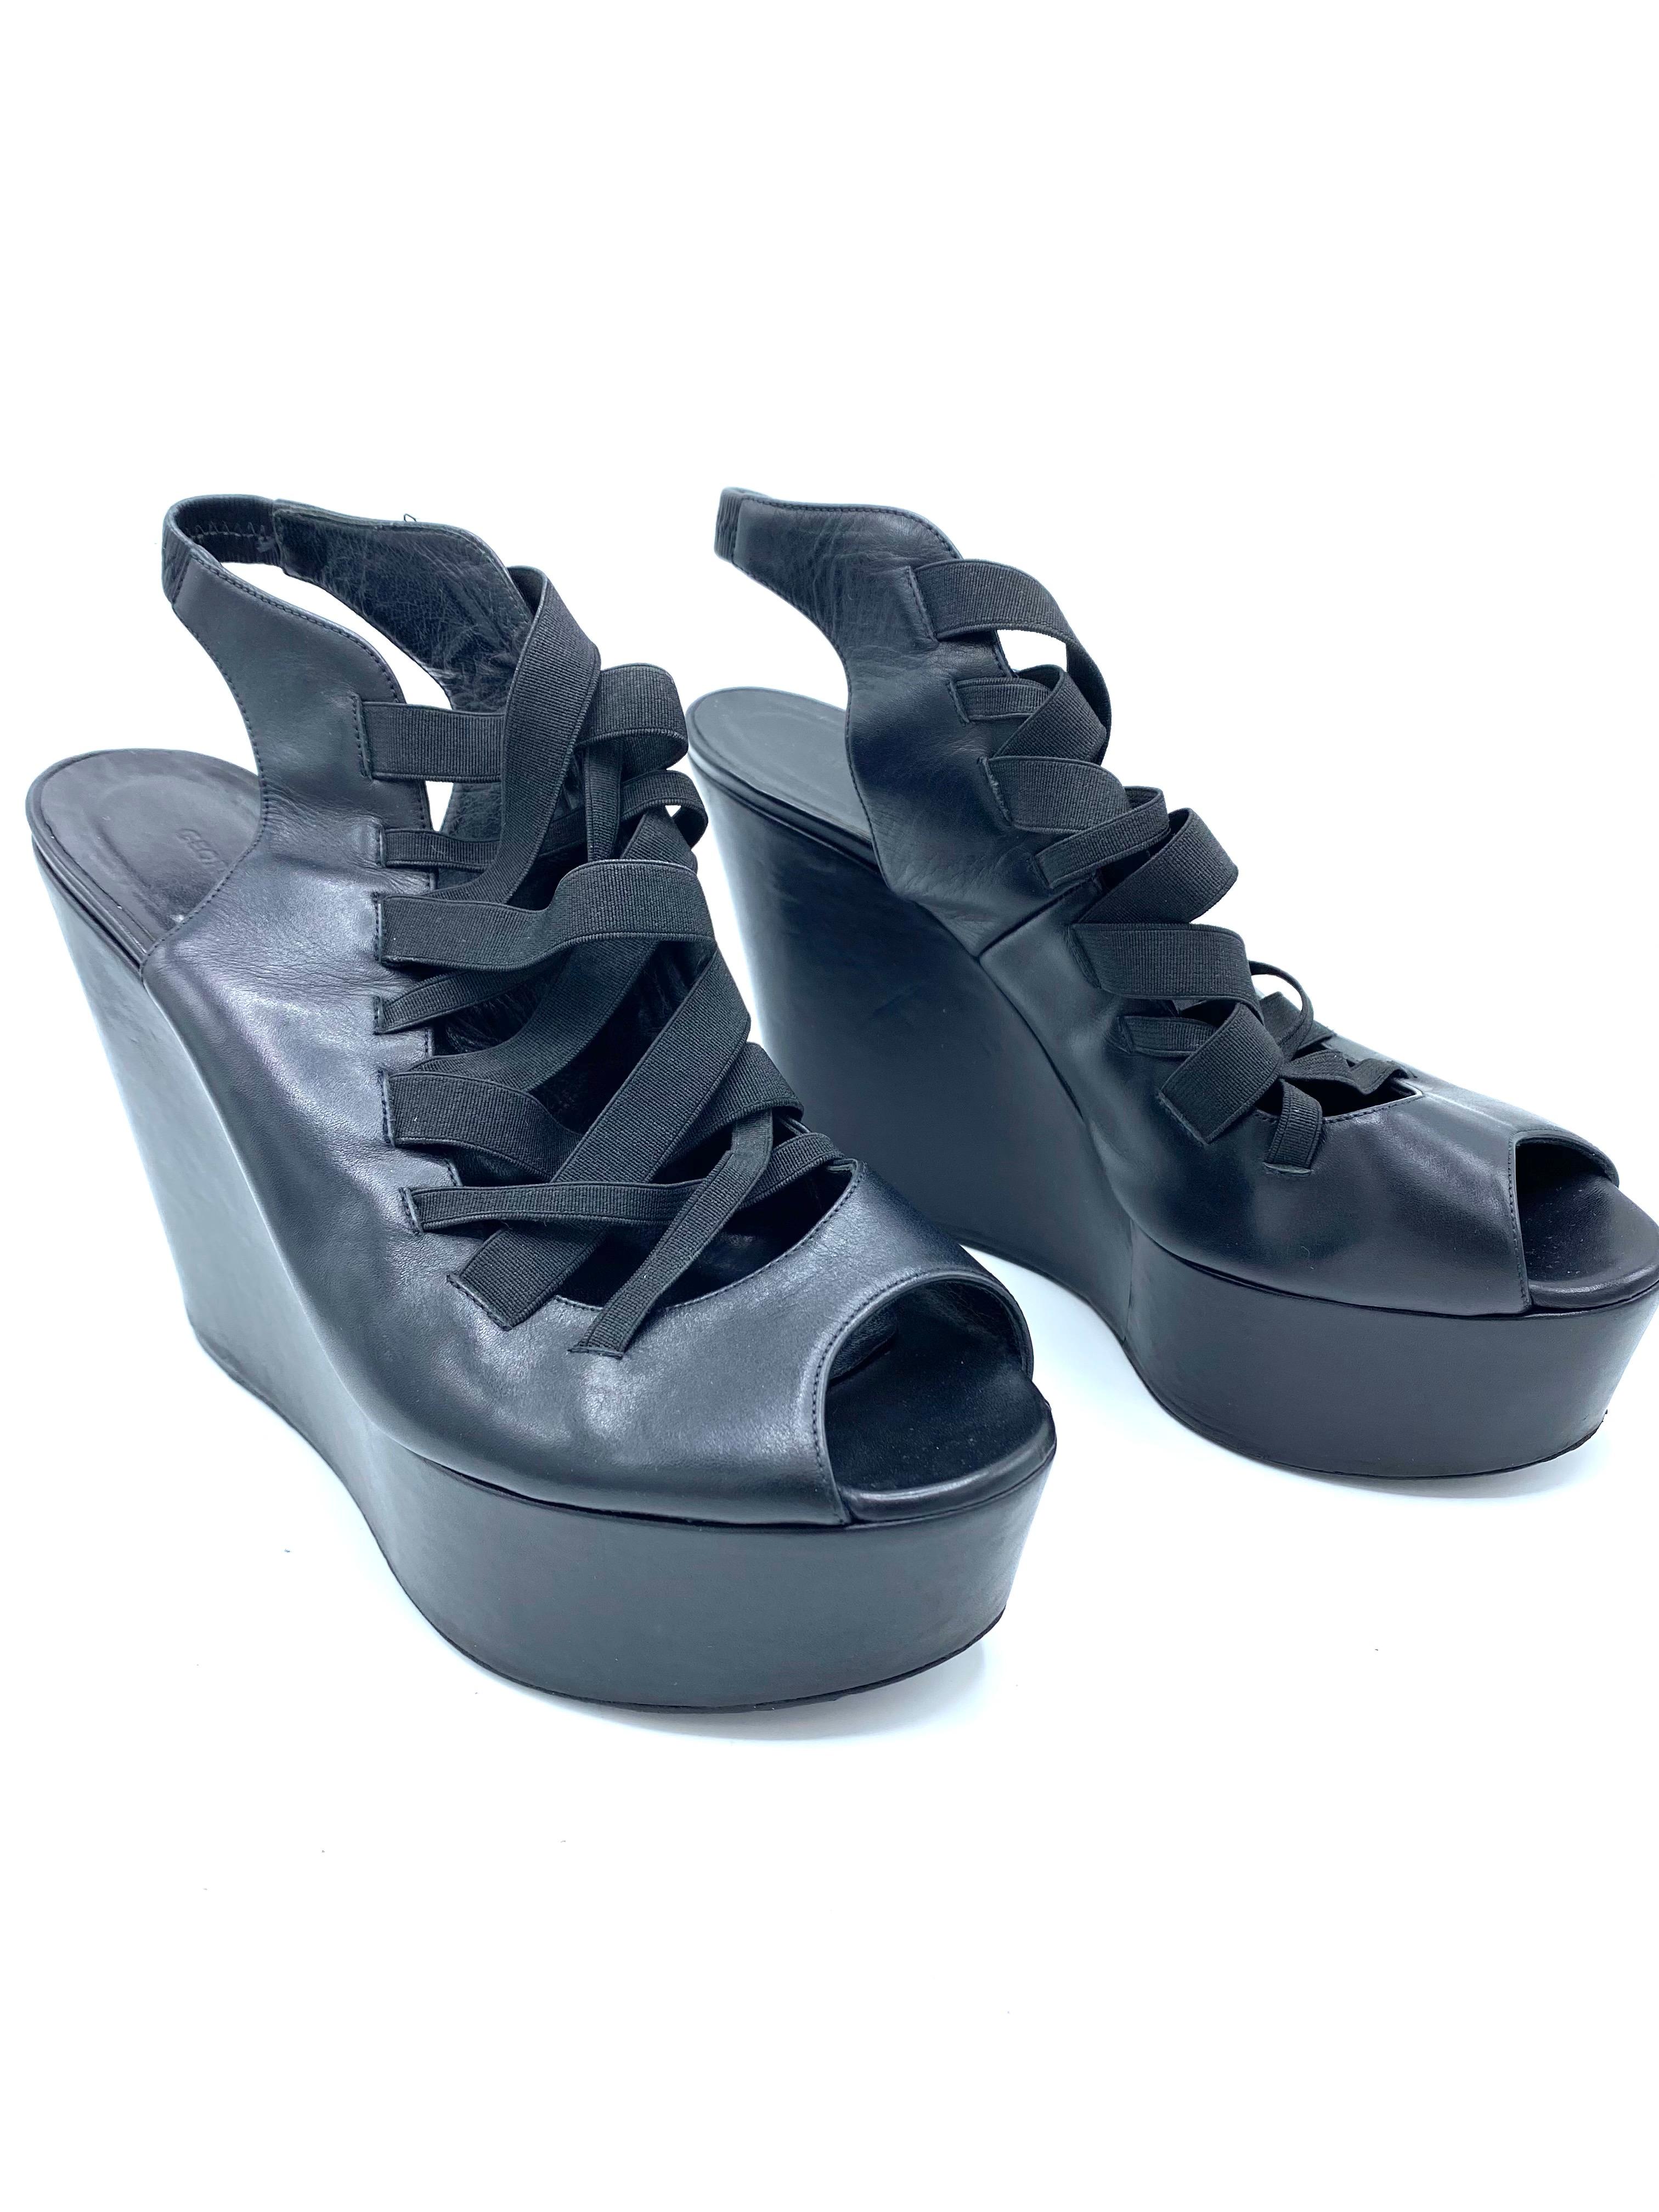 Einzelheiten zum Produkt:

Die Schuhe verfügen über schwarzes Leder, offene Zehe, die Plattform misst 5 